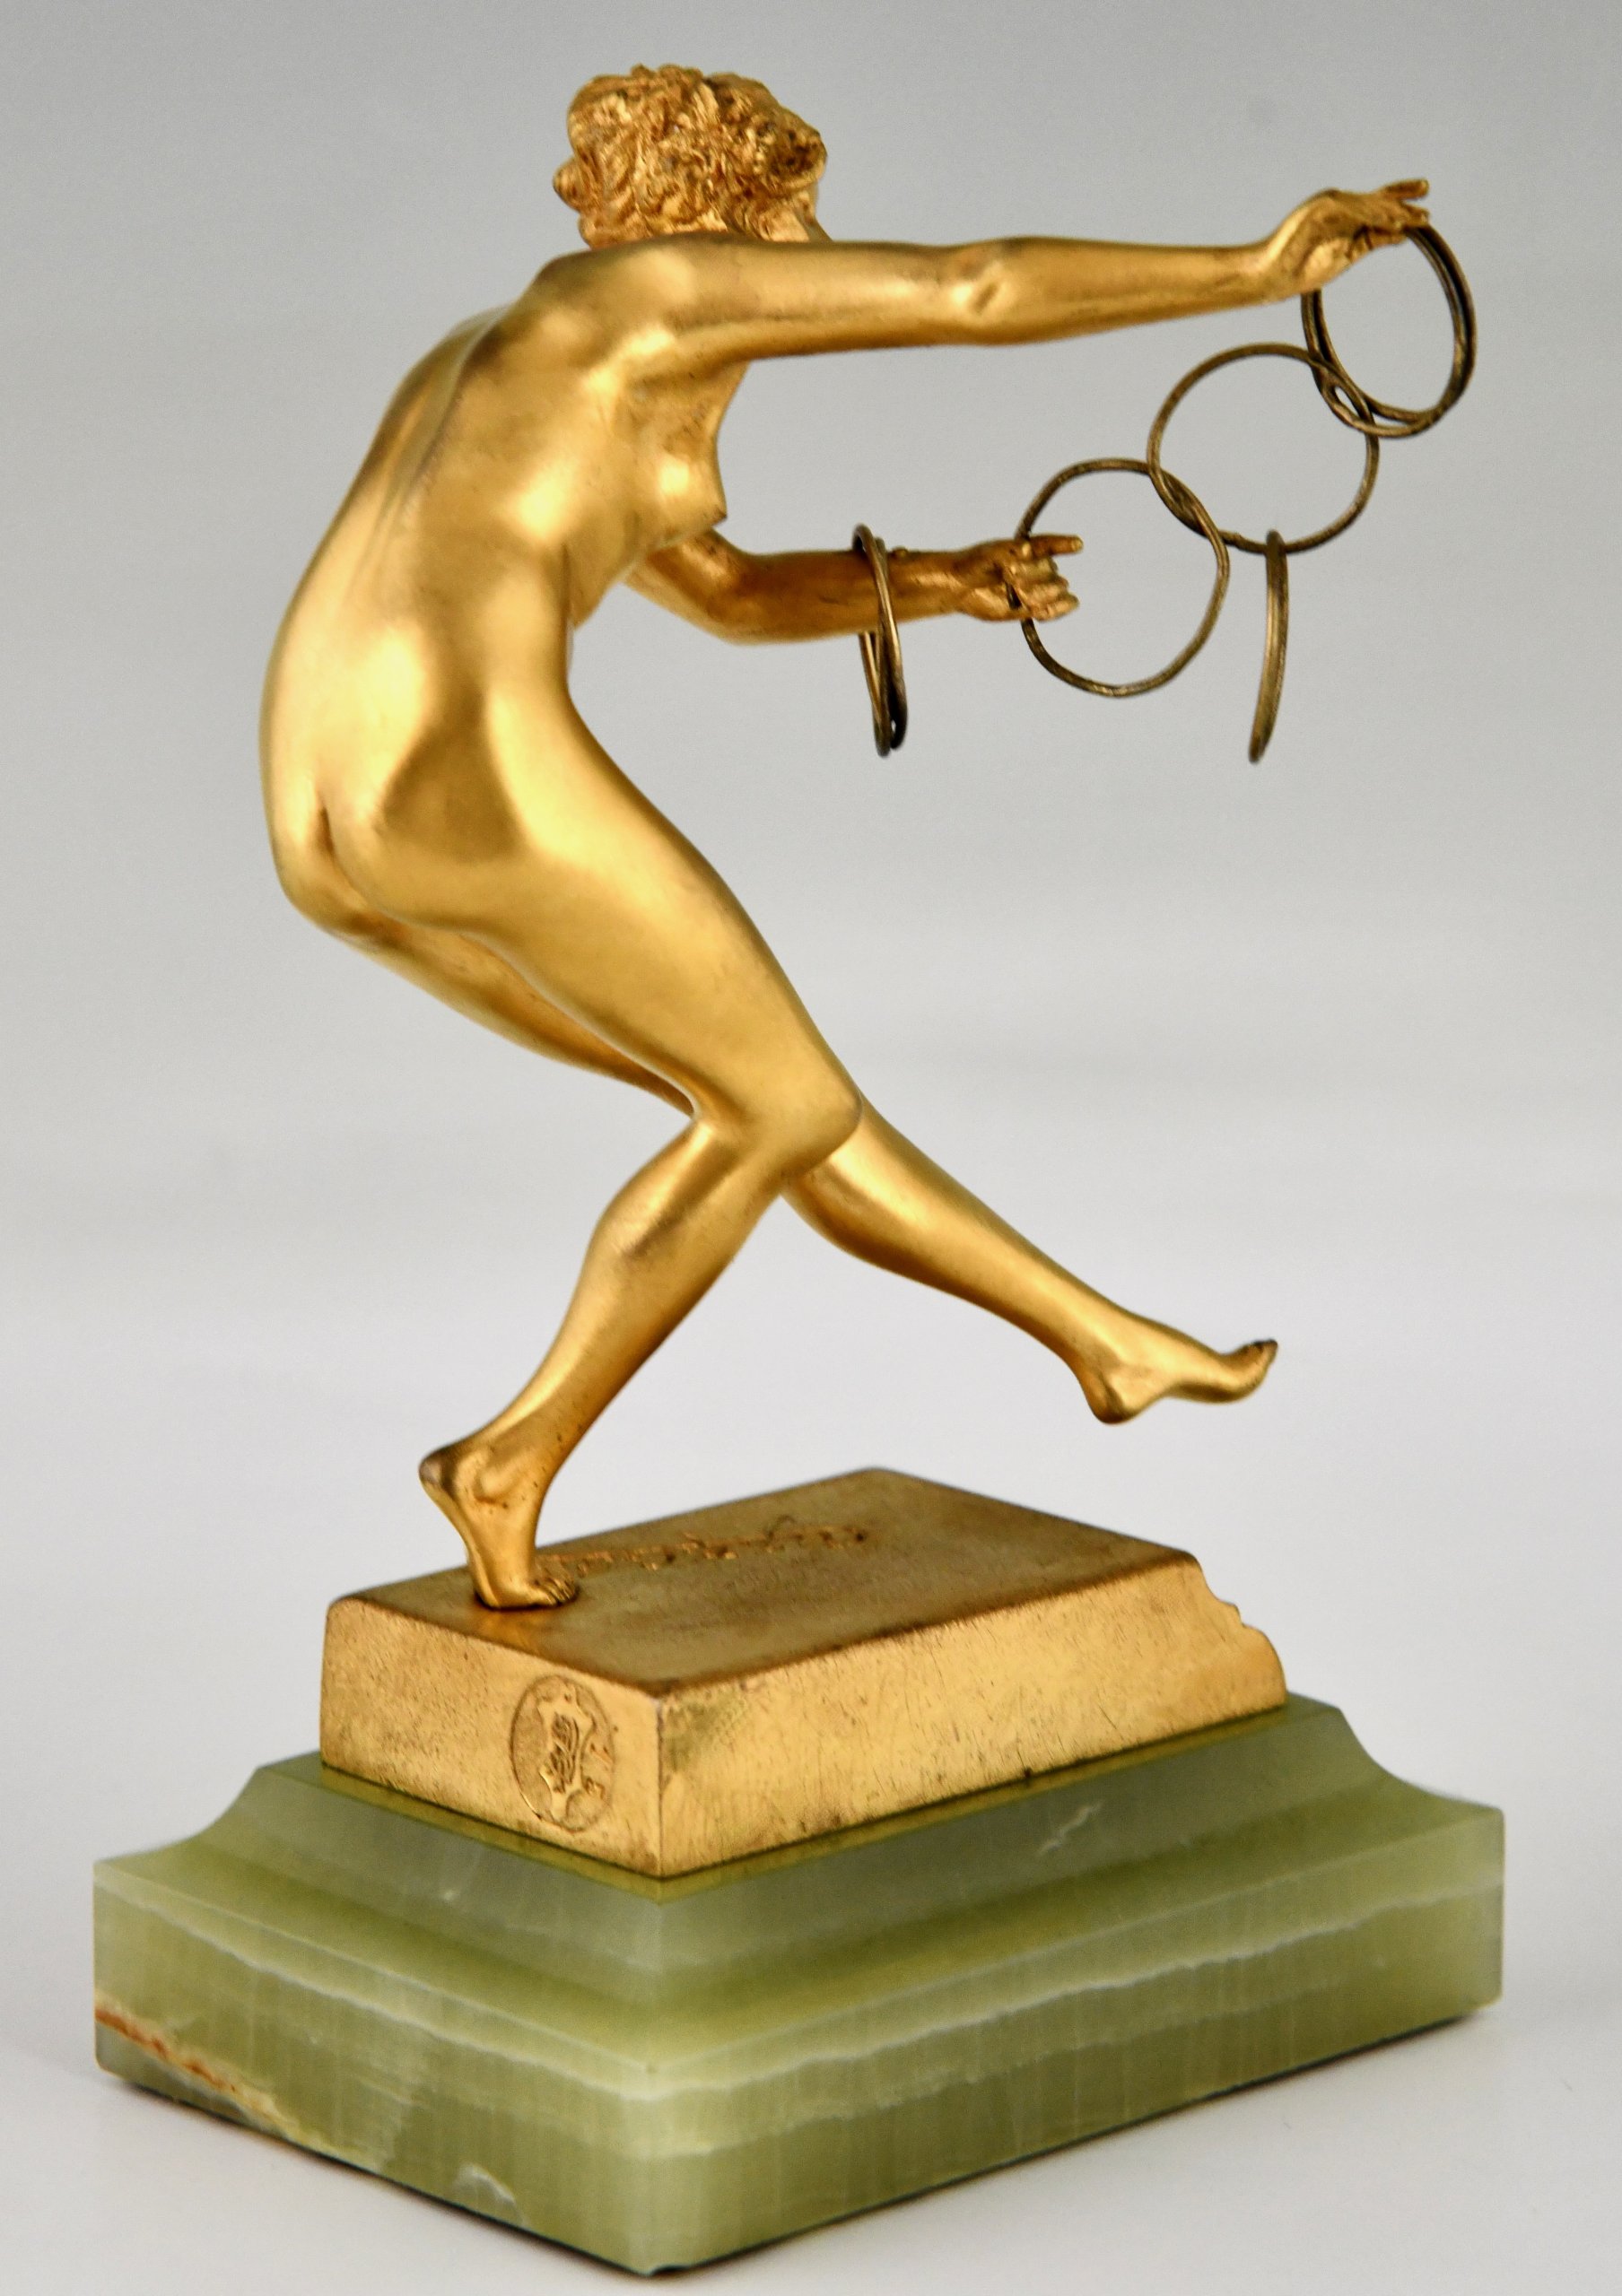 Art Deco bronzen sculptuur dansend naakt met ringen